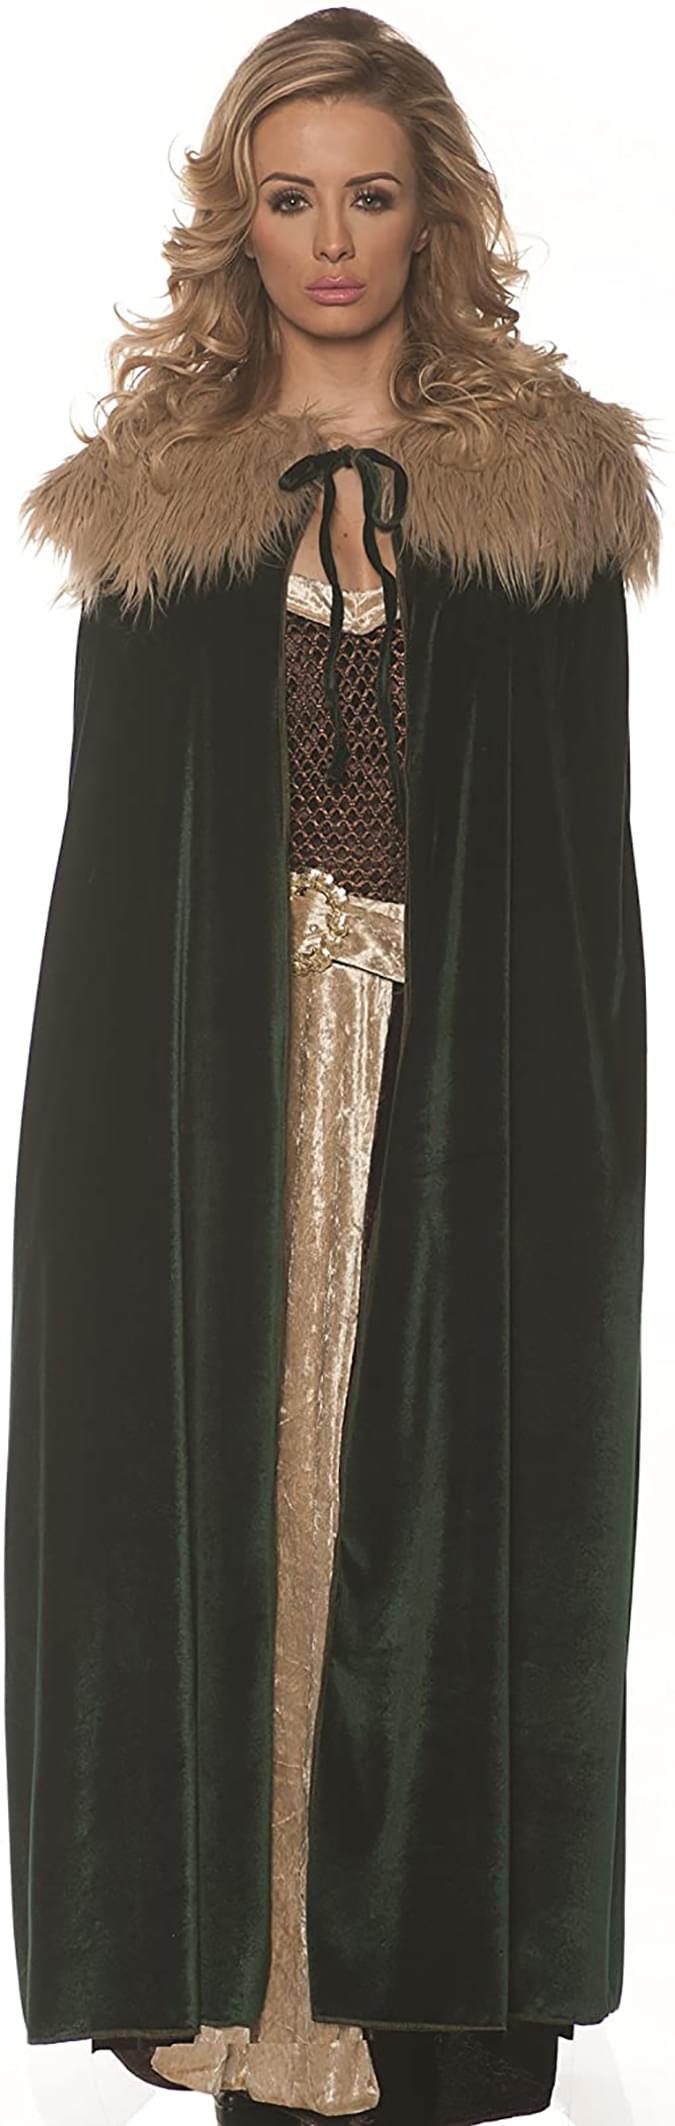 Women's Panne Renaissance Costume Cape w/ Faux Fur Trim - Green